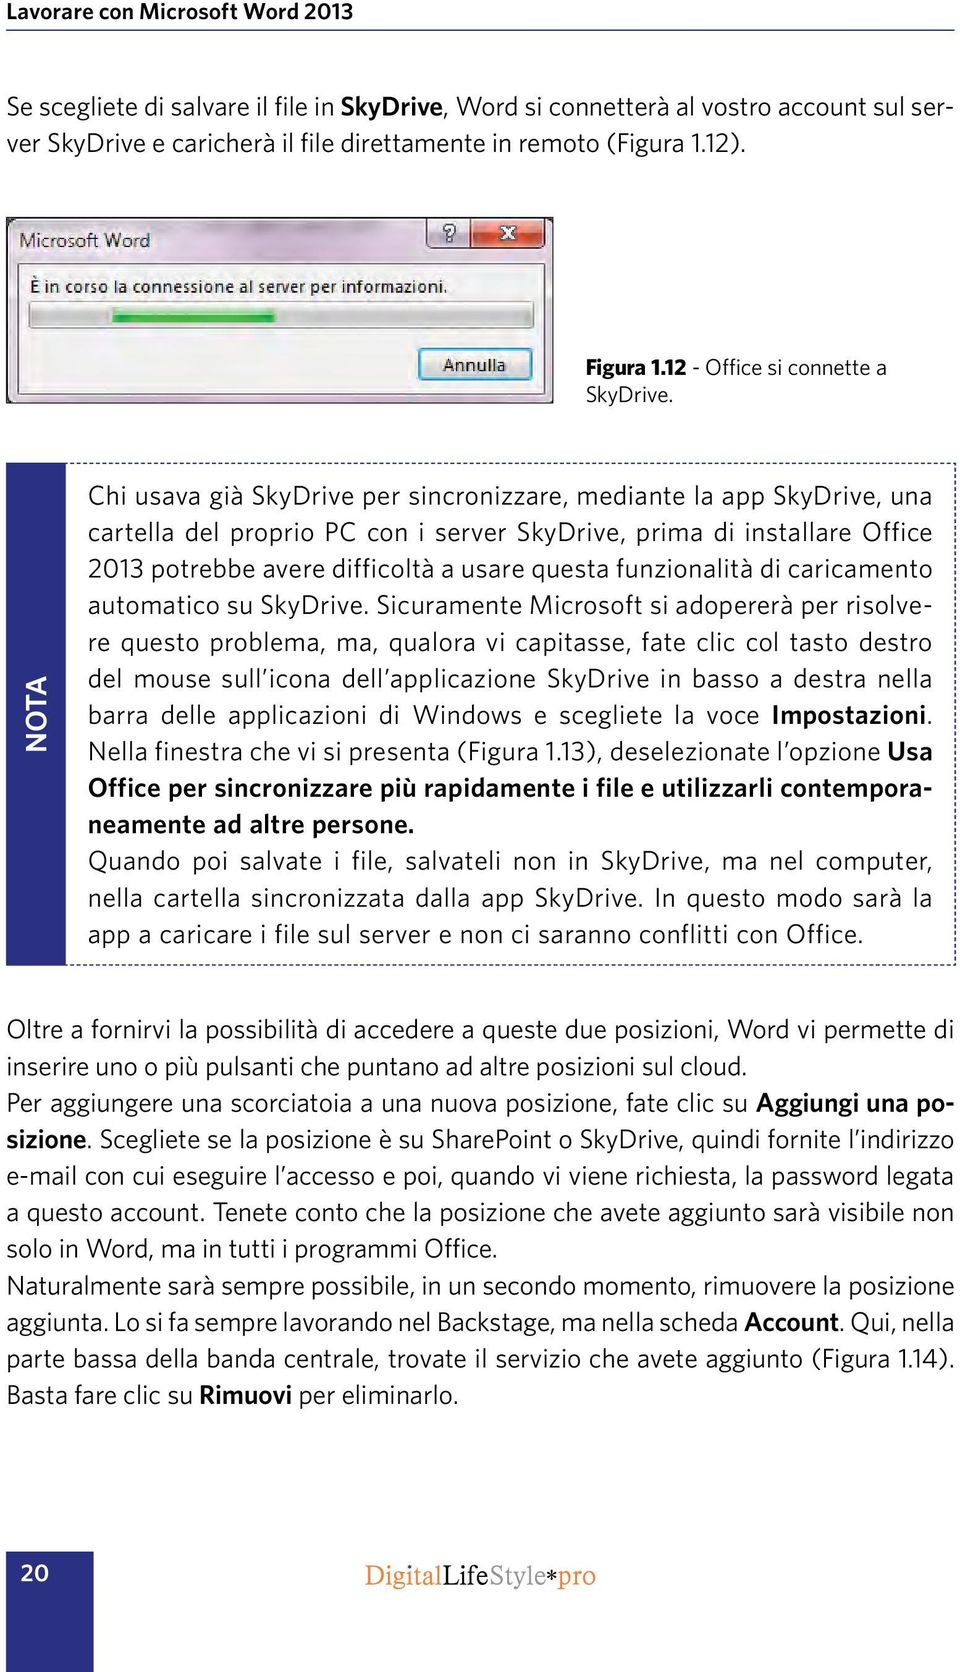 NOTA Chi usava già SkyDrive per sincronizzare, mediante la app SkyDrive, una cartella del proprio PC con i server SkyDrive, prima di installare Office 2013 potrebbe avere difficoltà a usare questa